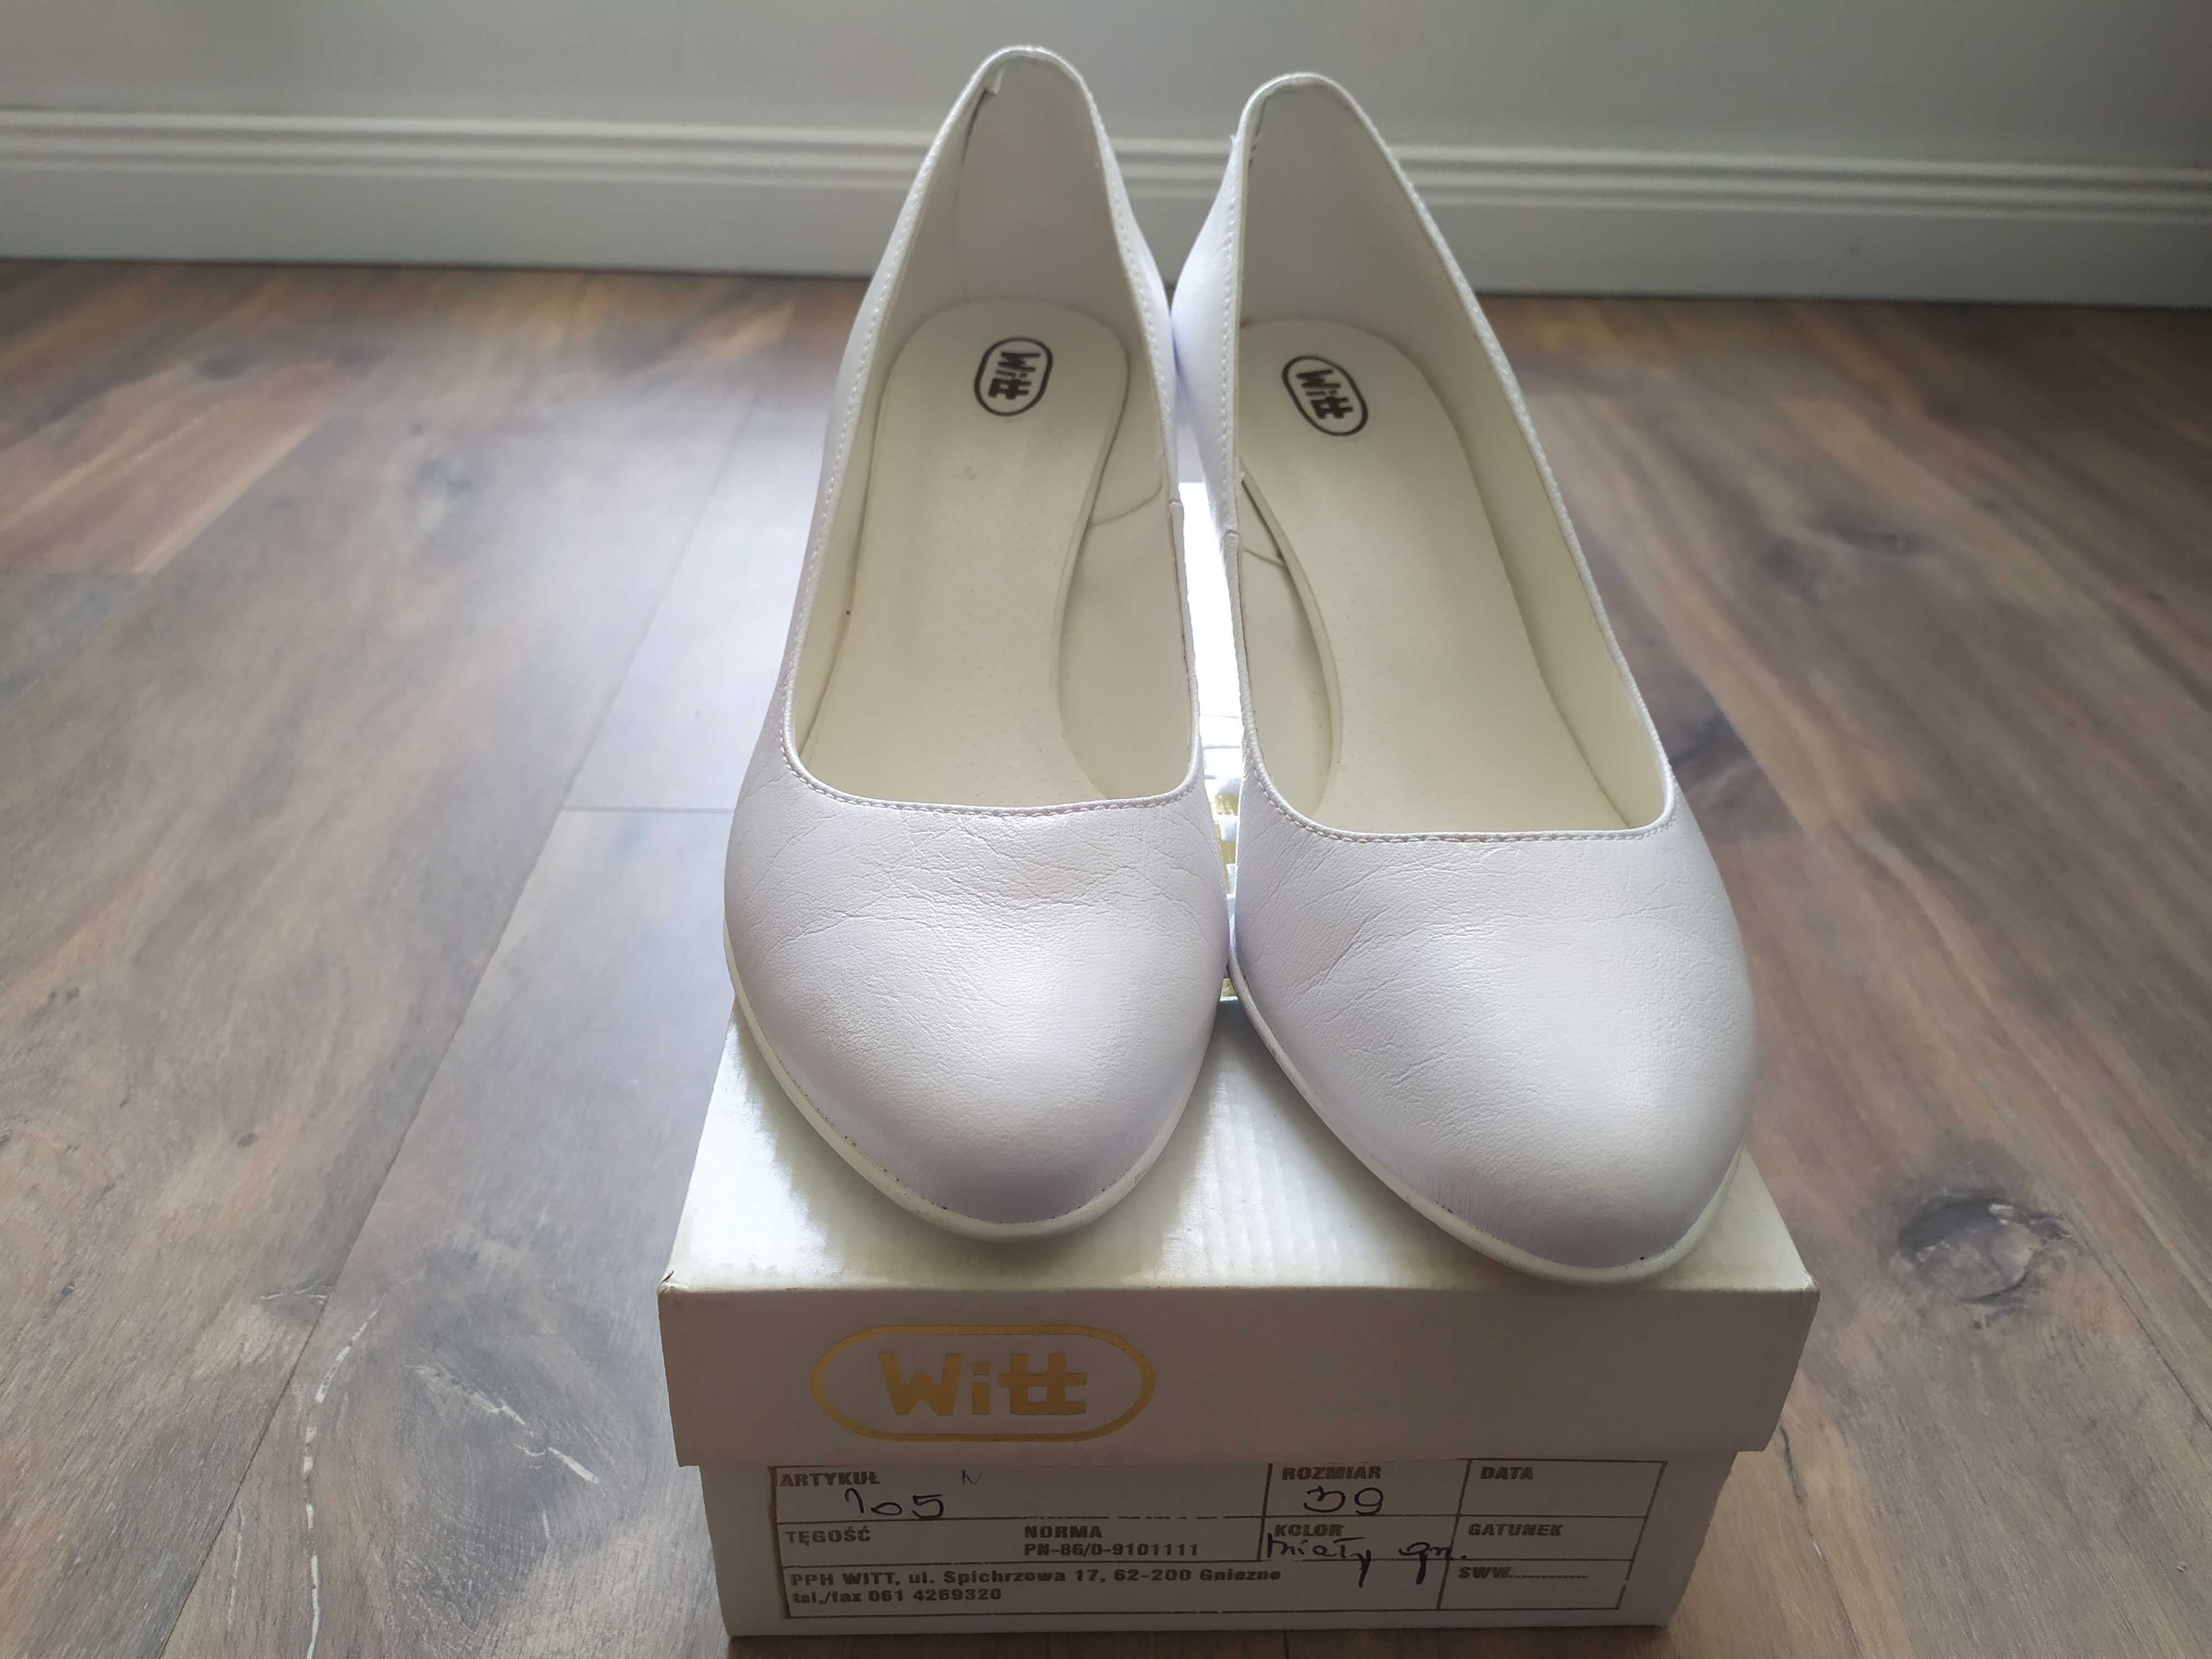 Nieużywane buty Witt białe - 39 Powystawowe model 105 czółenka